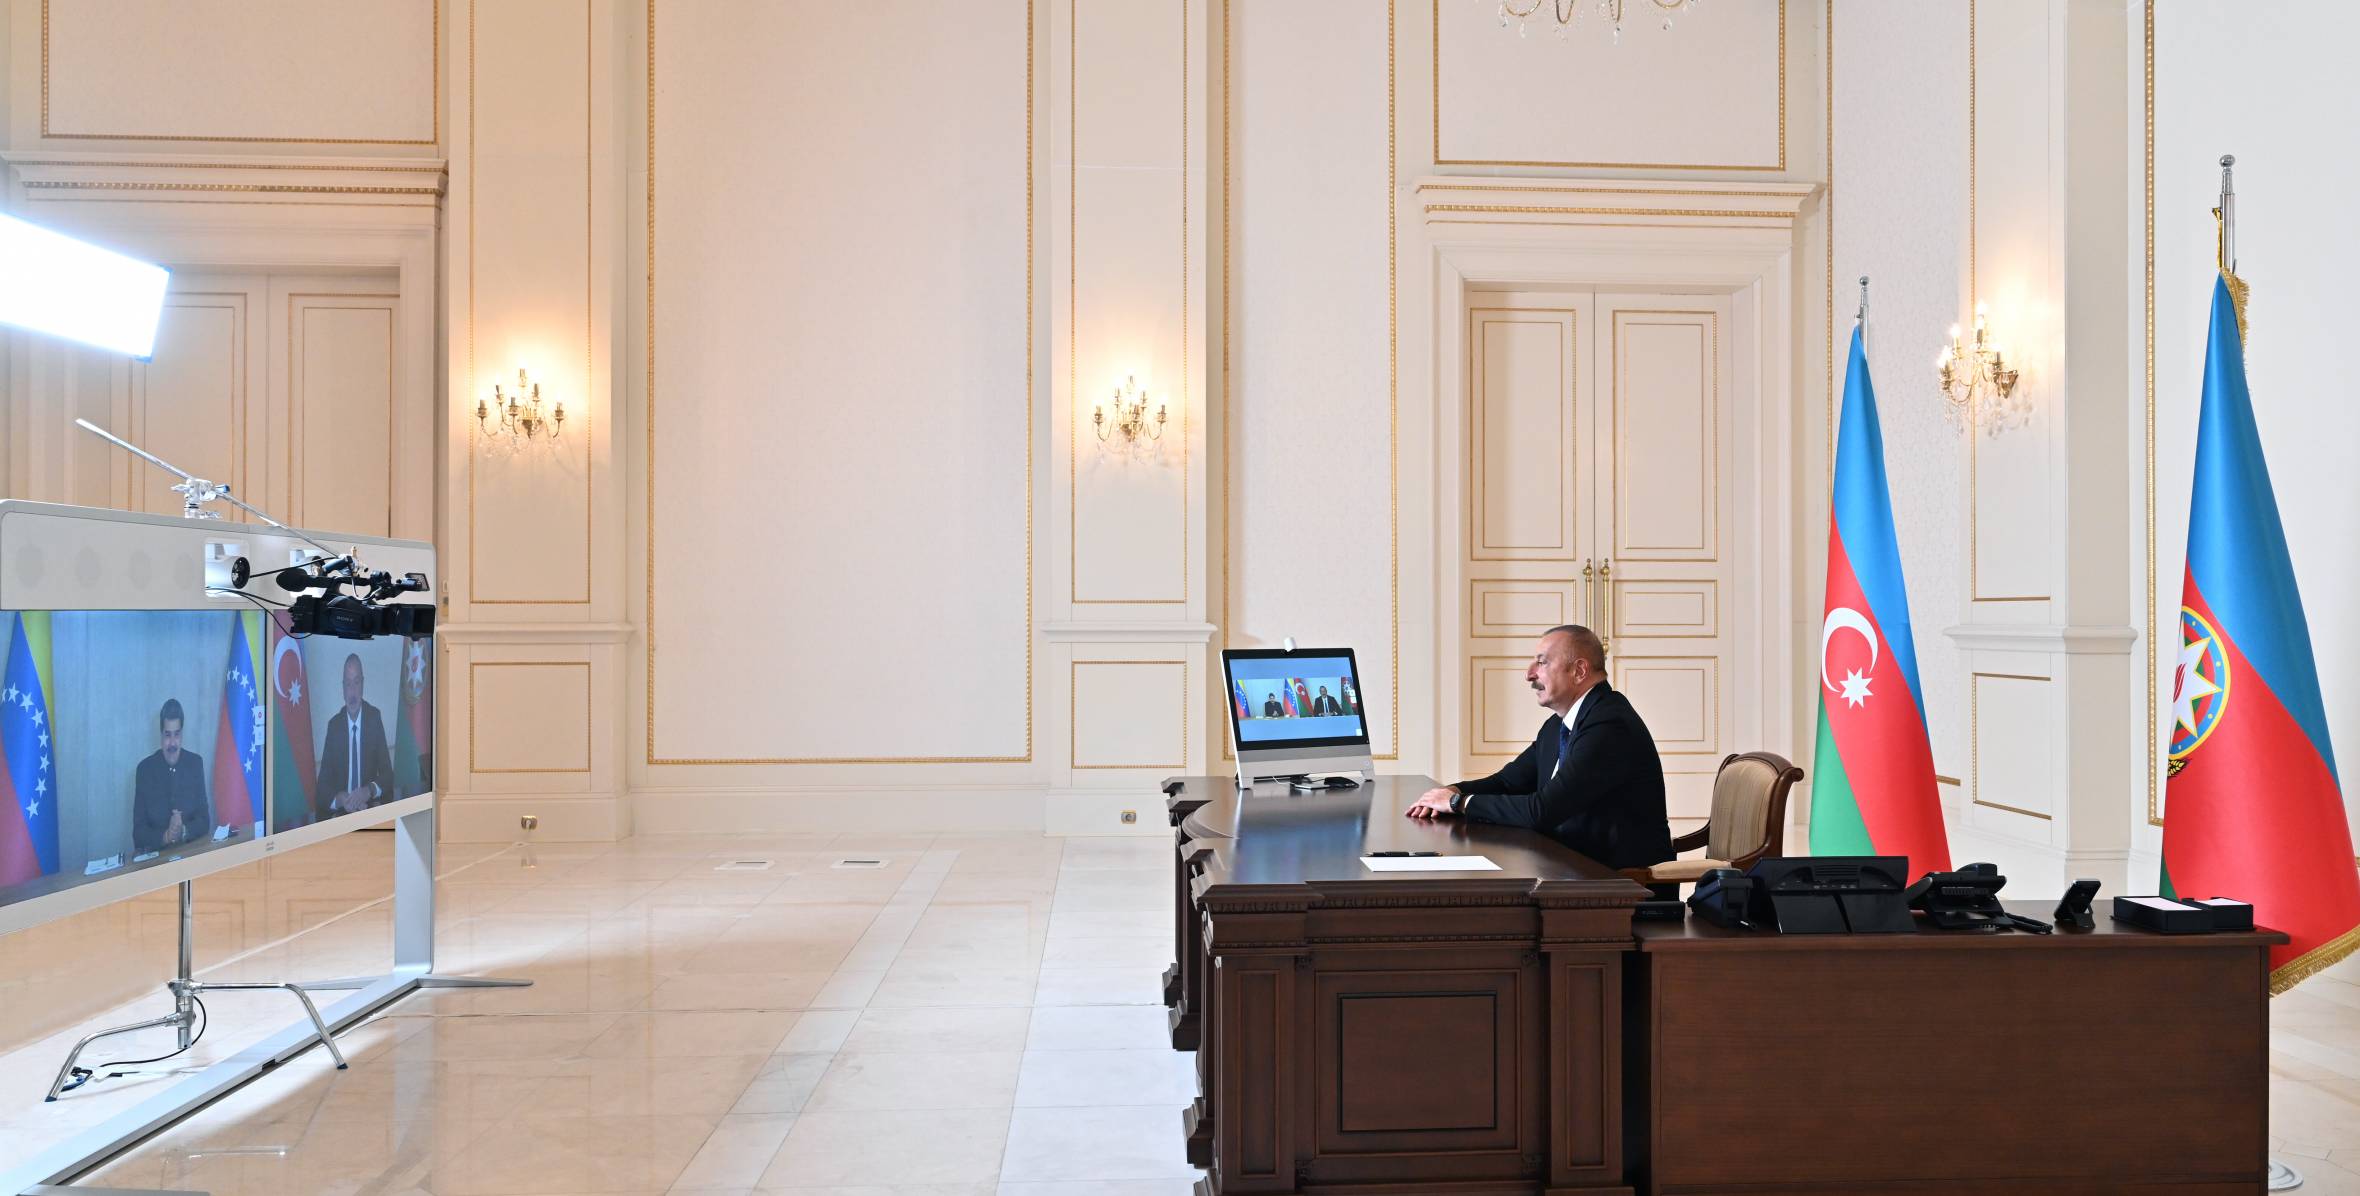 Ильхам Алиев встретился с Президентом Венесуэлы Николасом Мадуро в формате видеоконференции